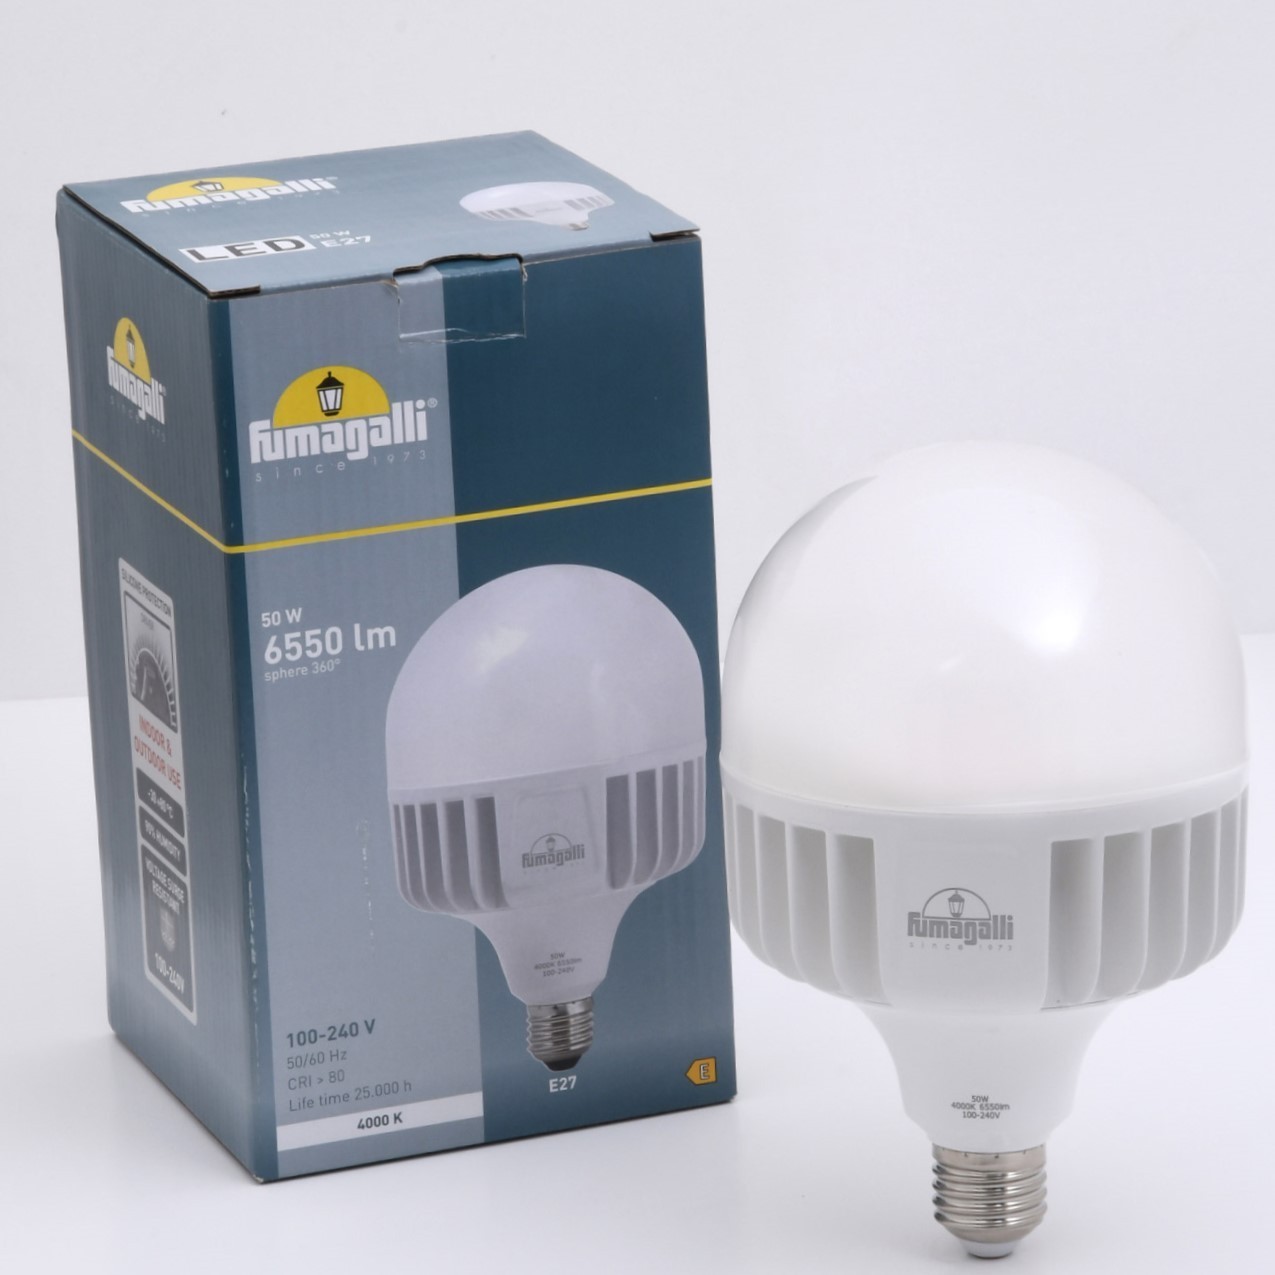 Ampoule LED 12V, Éclairage LED de haute qualité